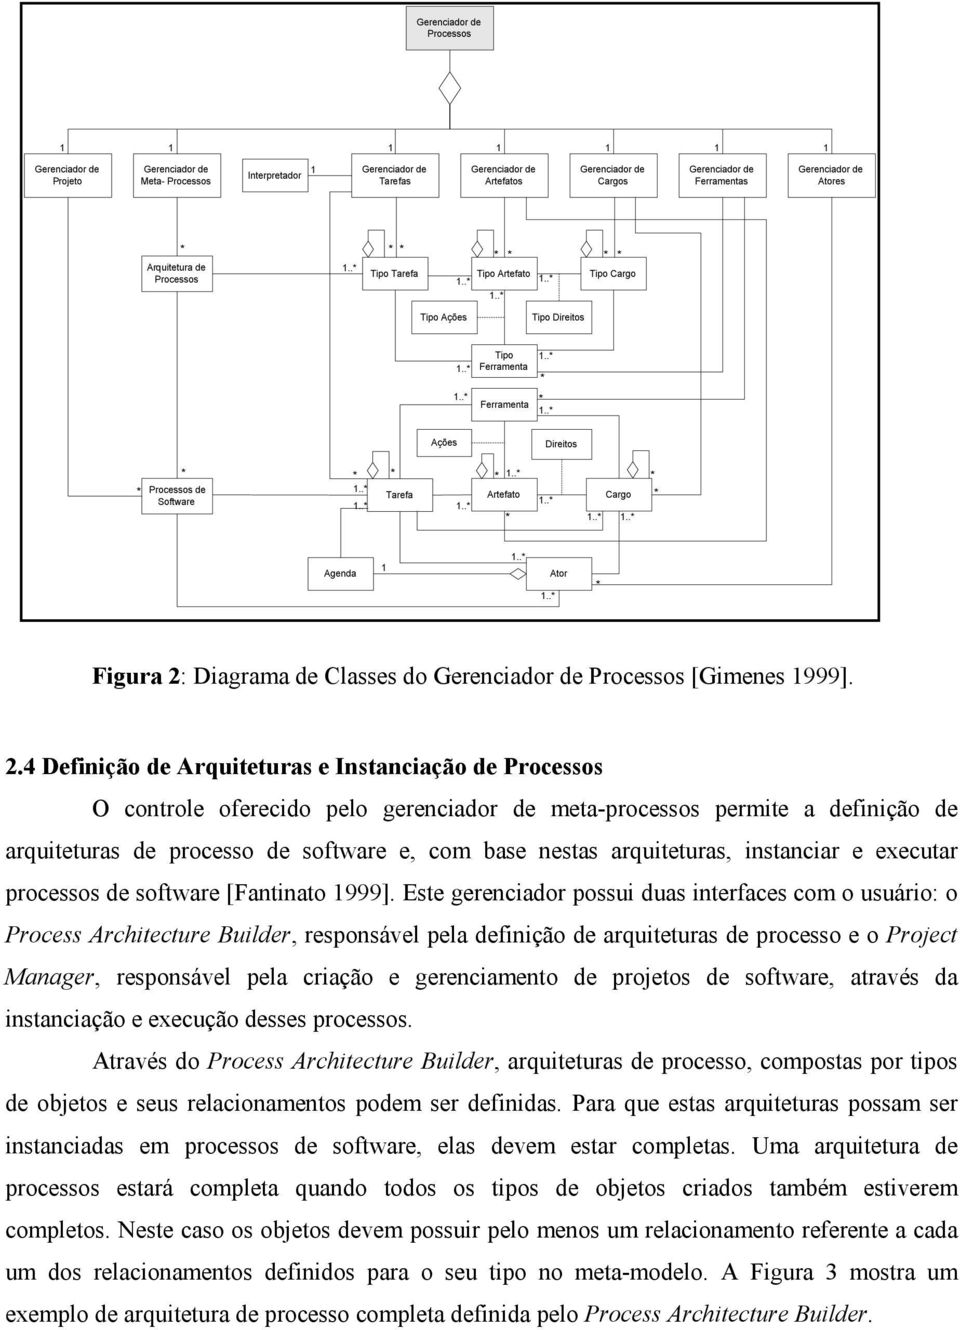 Diagrama de Classes do Processos [Gimenes 1999]. 2.